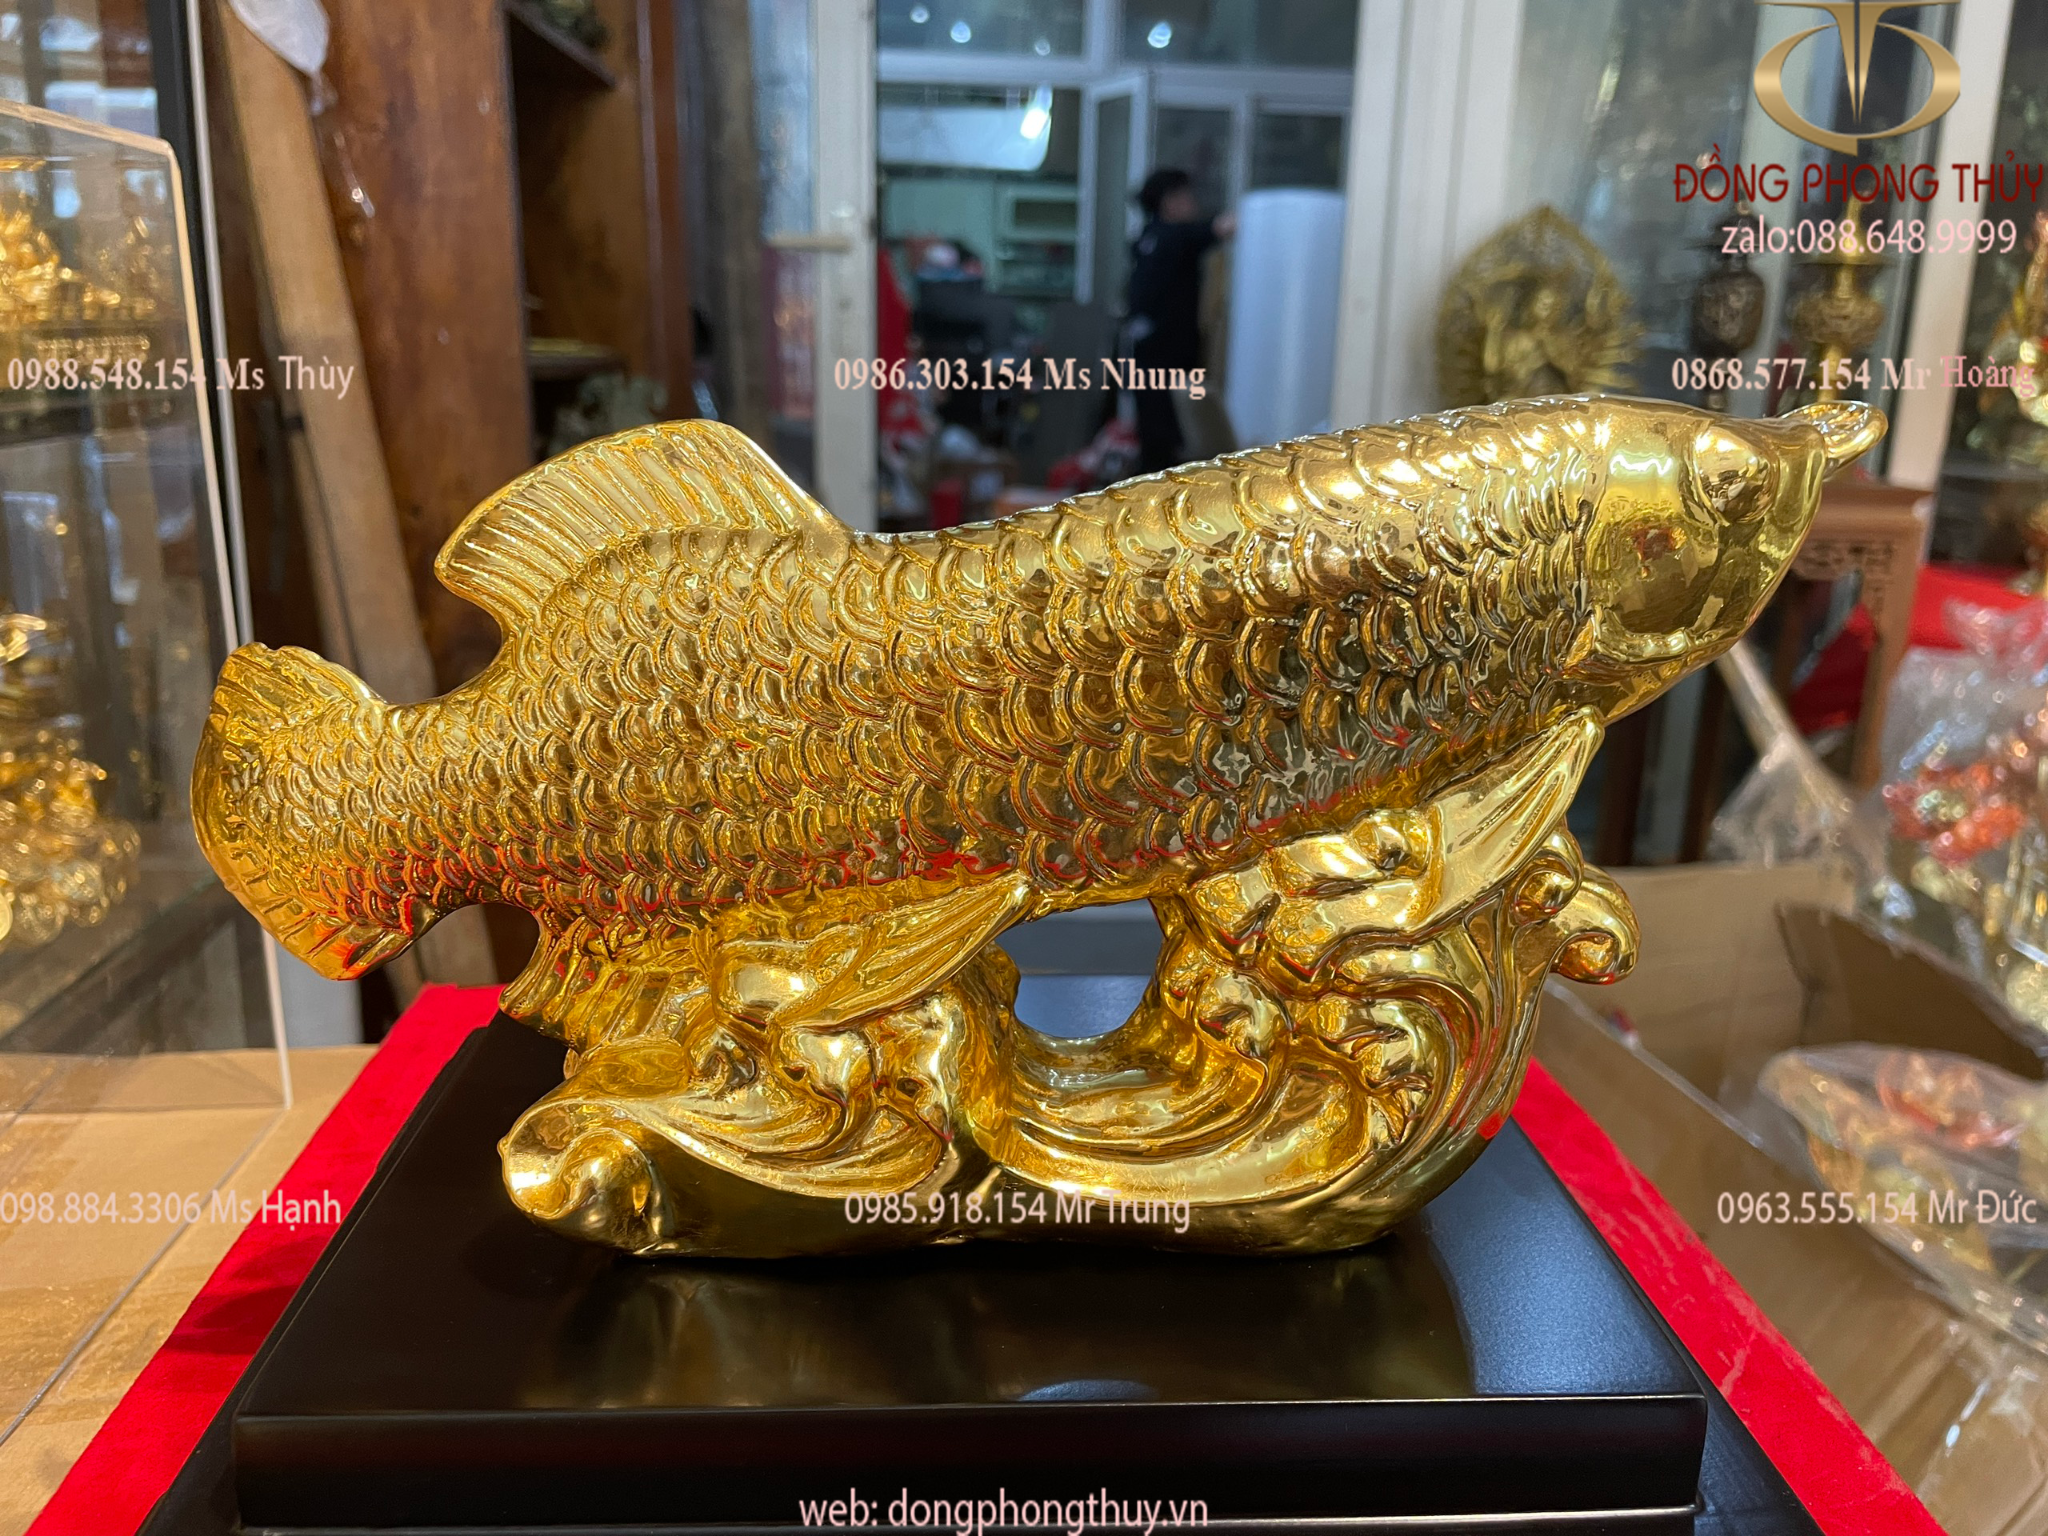 Quà tặng: Tượng cá rồng phong thủy bằng đồng dát vàng 24k